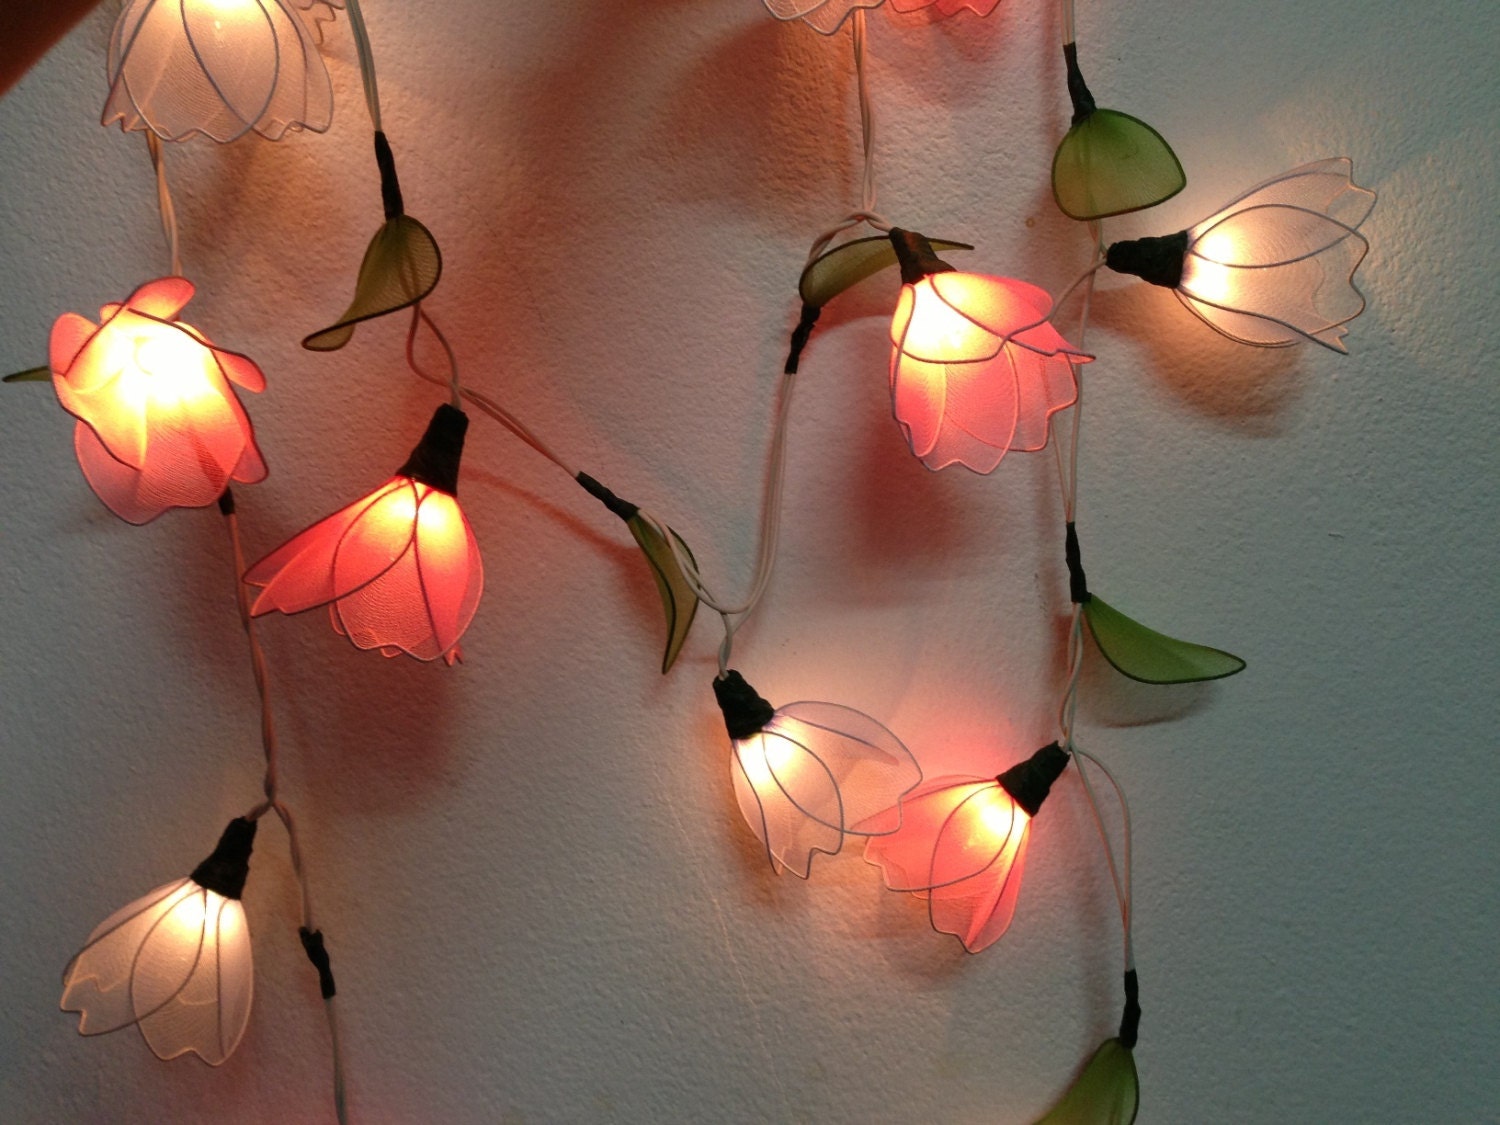 Led guirlandes de lumières leds fées décoratives à piles, lumière de fil de  cuivre pour chambre à coucher, mariage (16 pieds/5 m blanc chaud)